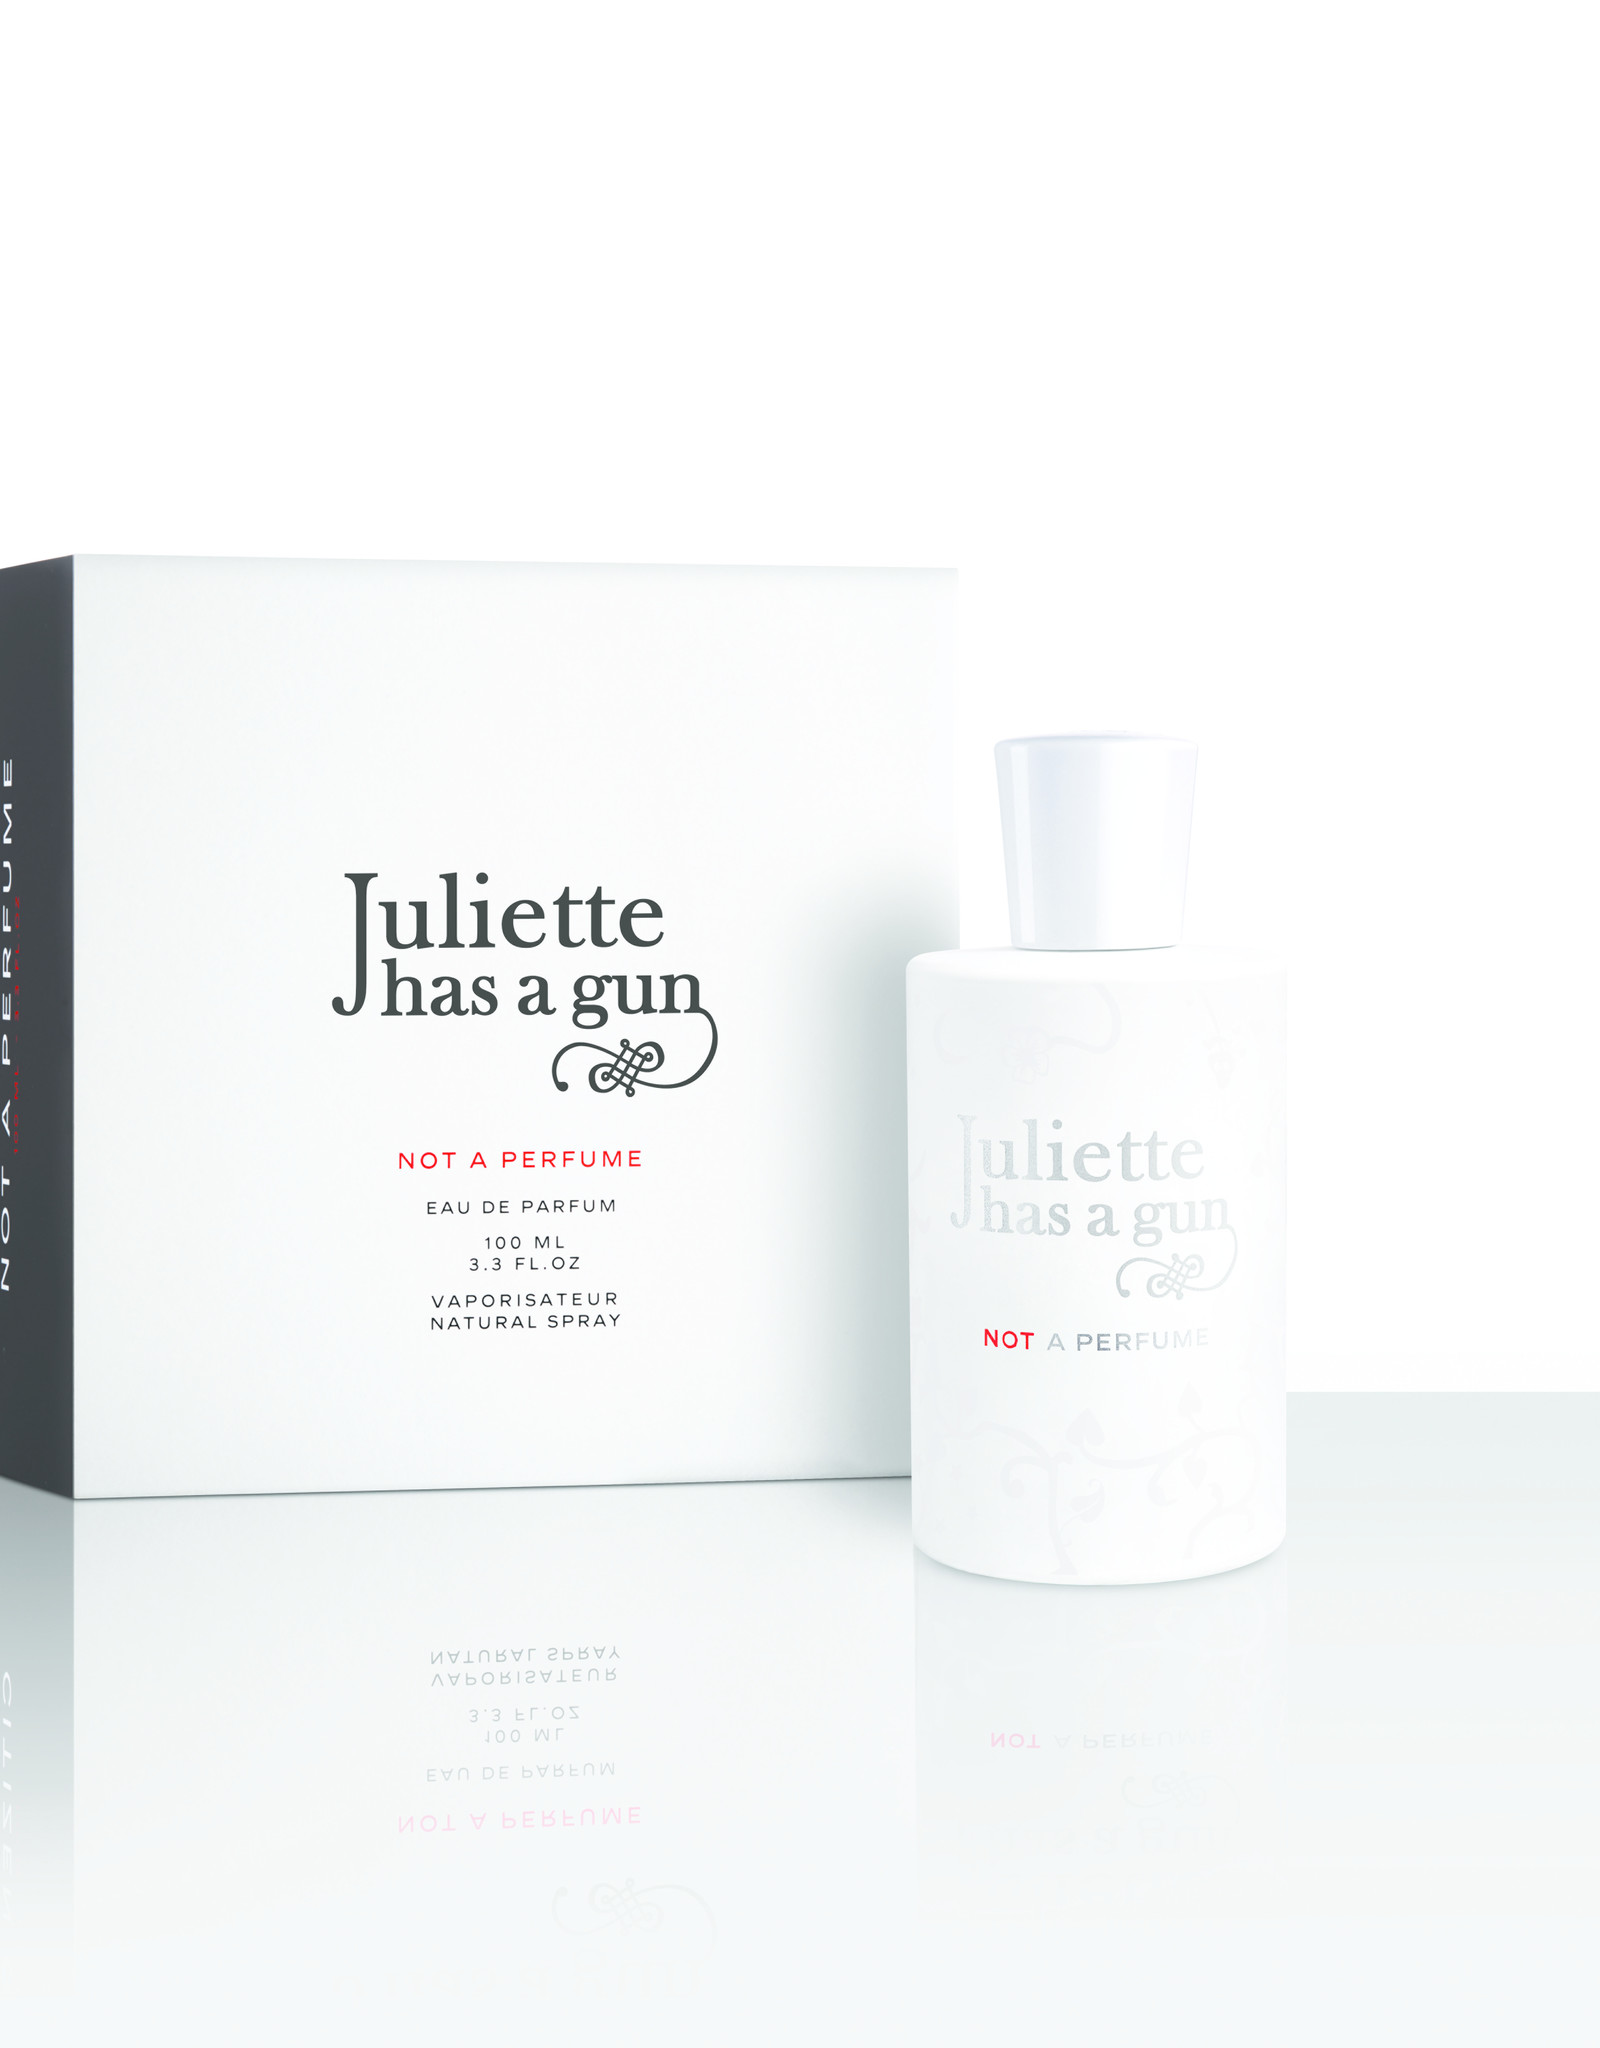 Juliette has a gun Juliette has a gun - Not a perfume 50ml